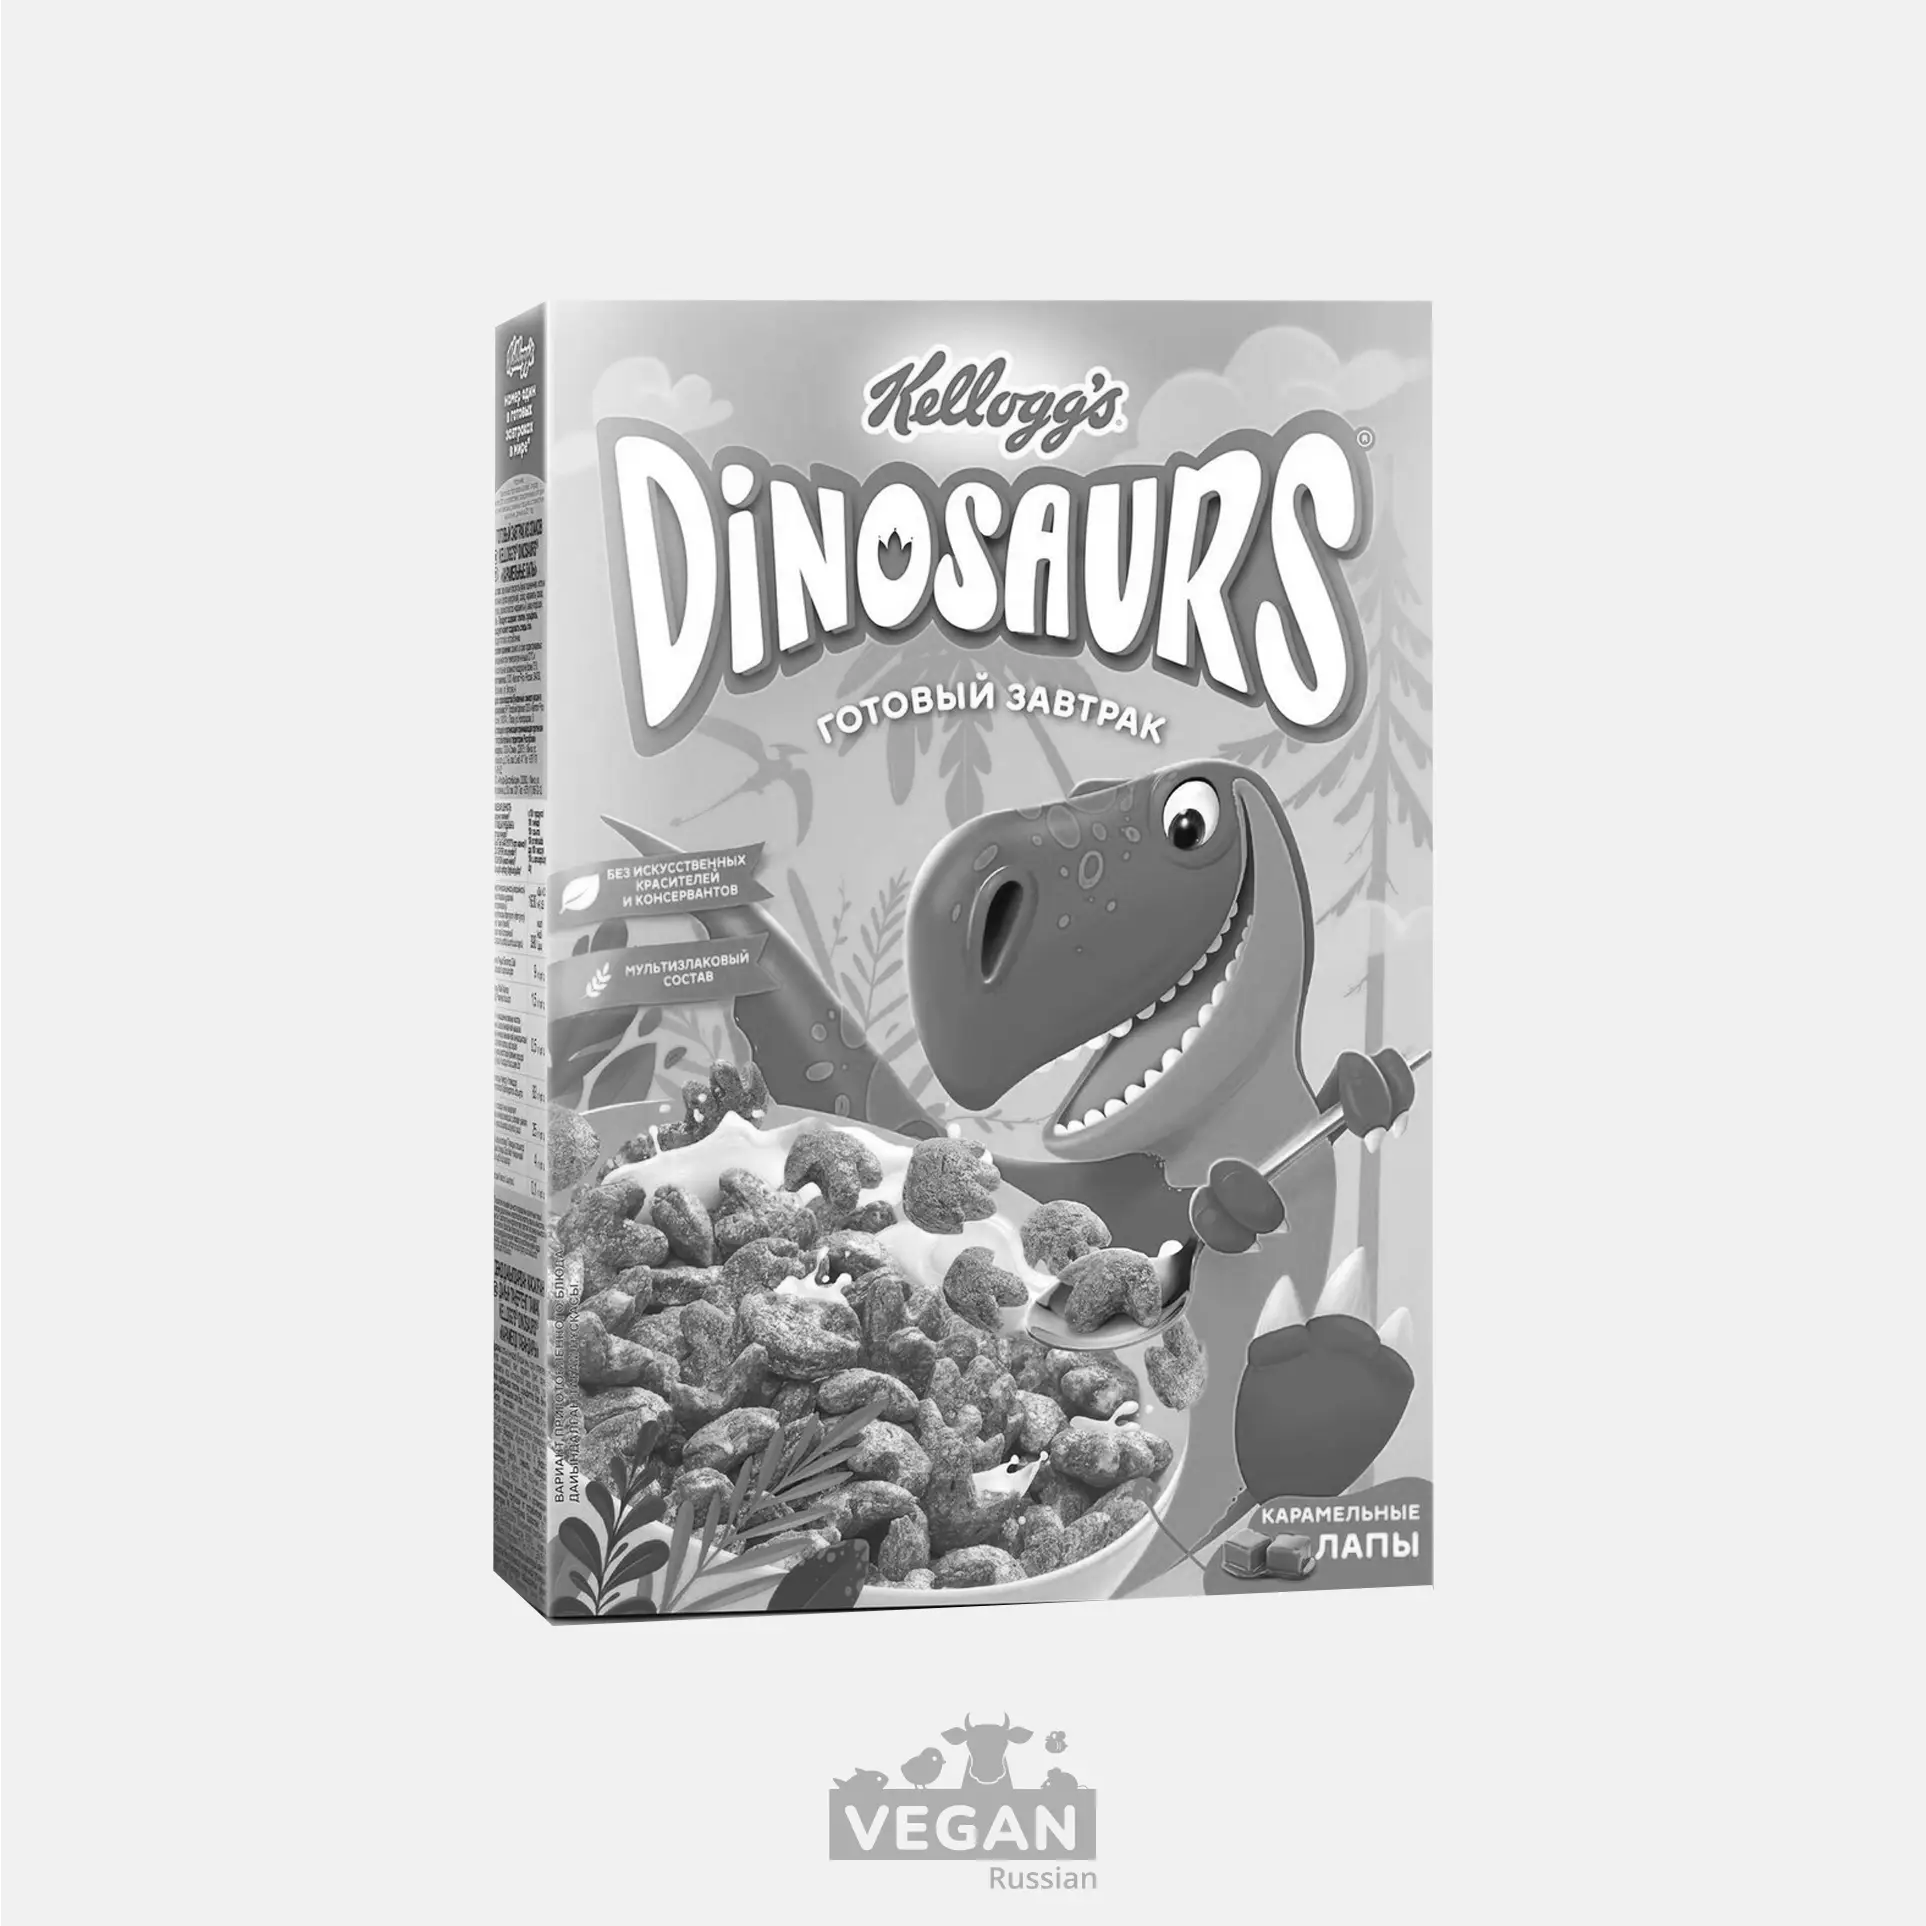 Архив: Готовый завтрак карамельные лапы Dinosaurs Kellogg's 220 г